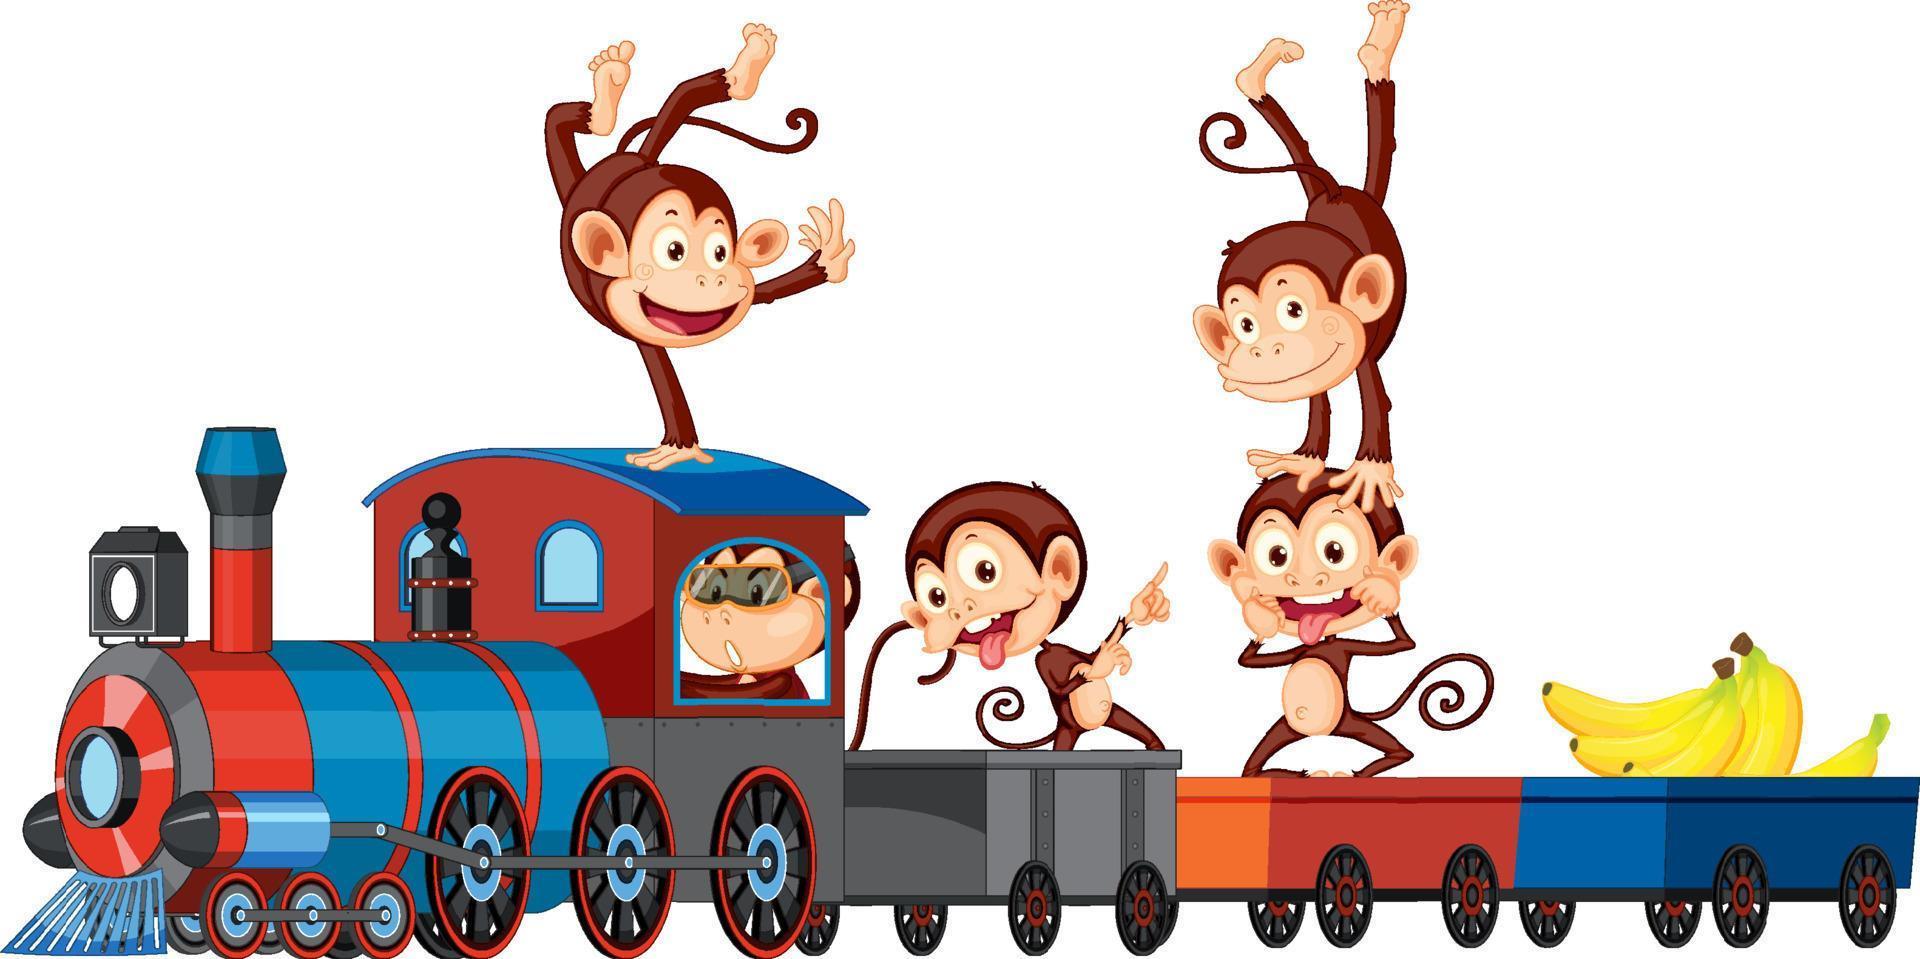 vijf apen rijden op de trein vector